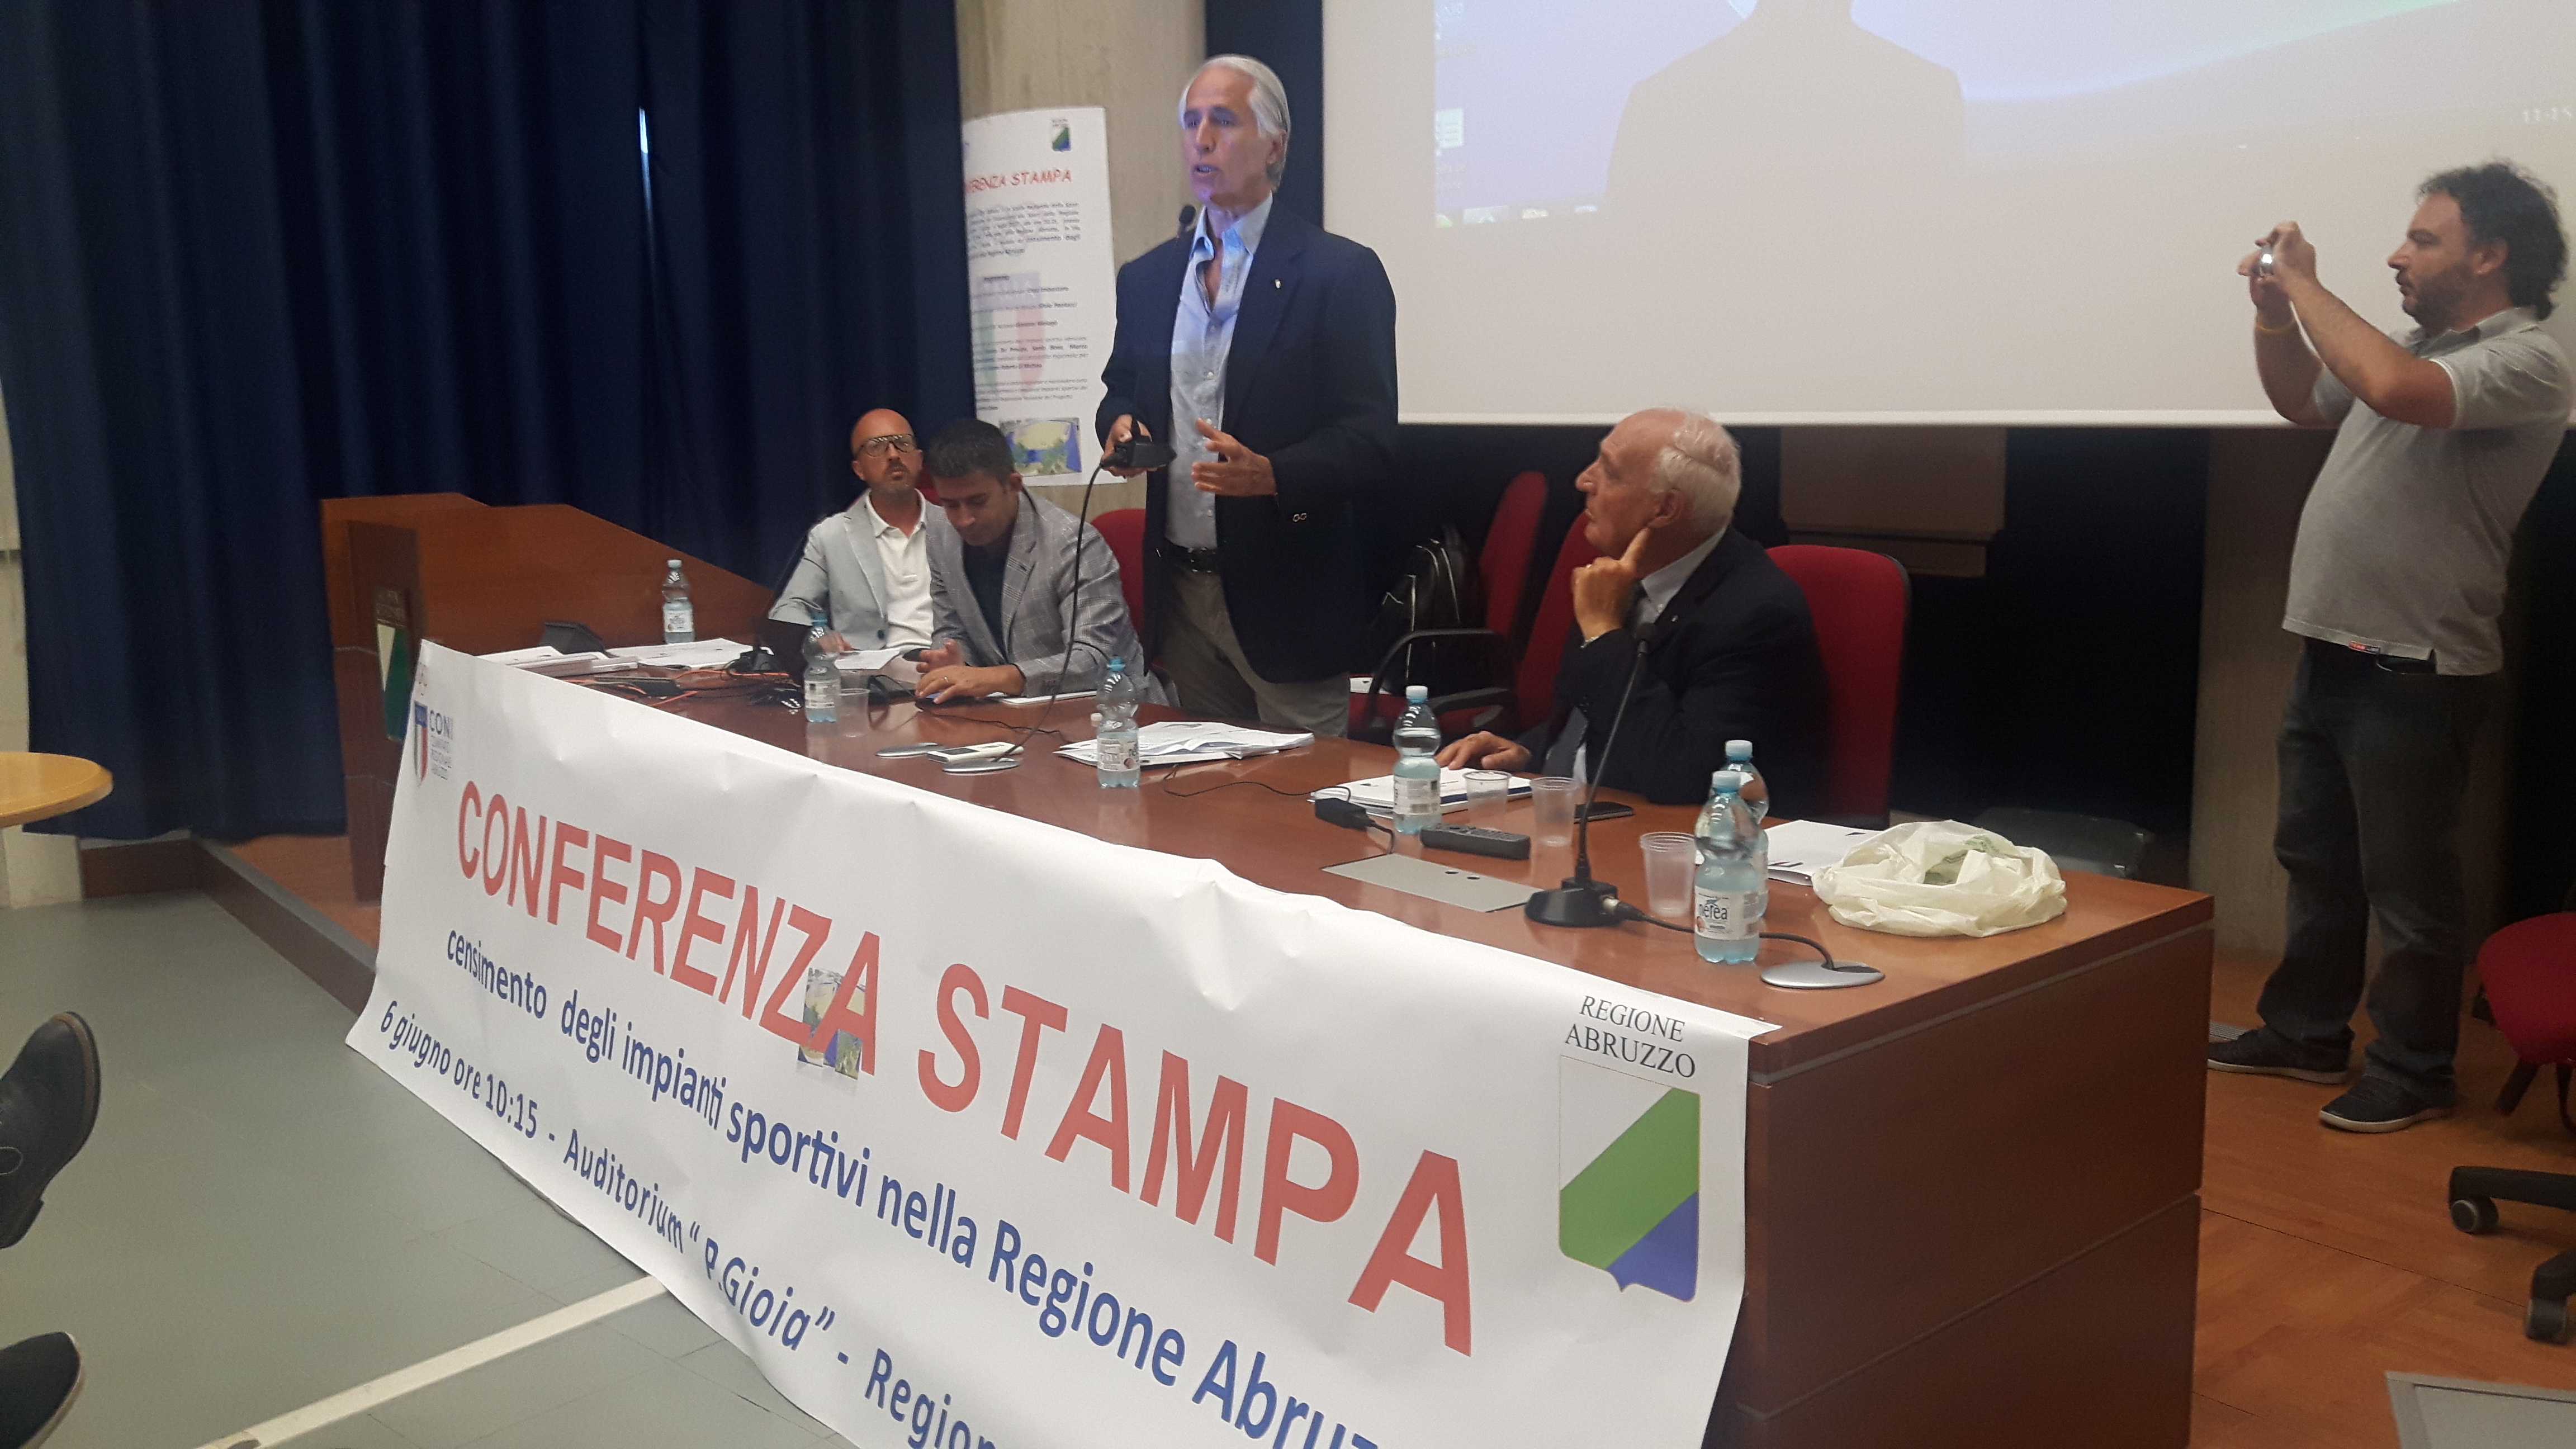 Presentato il censimento degli impianti sportivi in Abruzzo